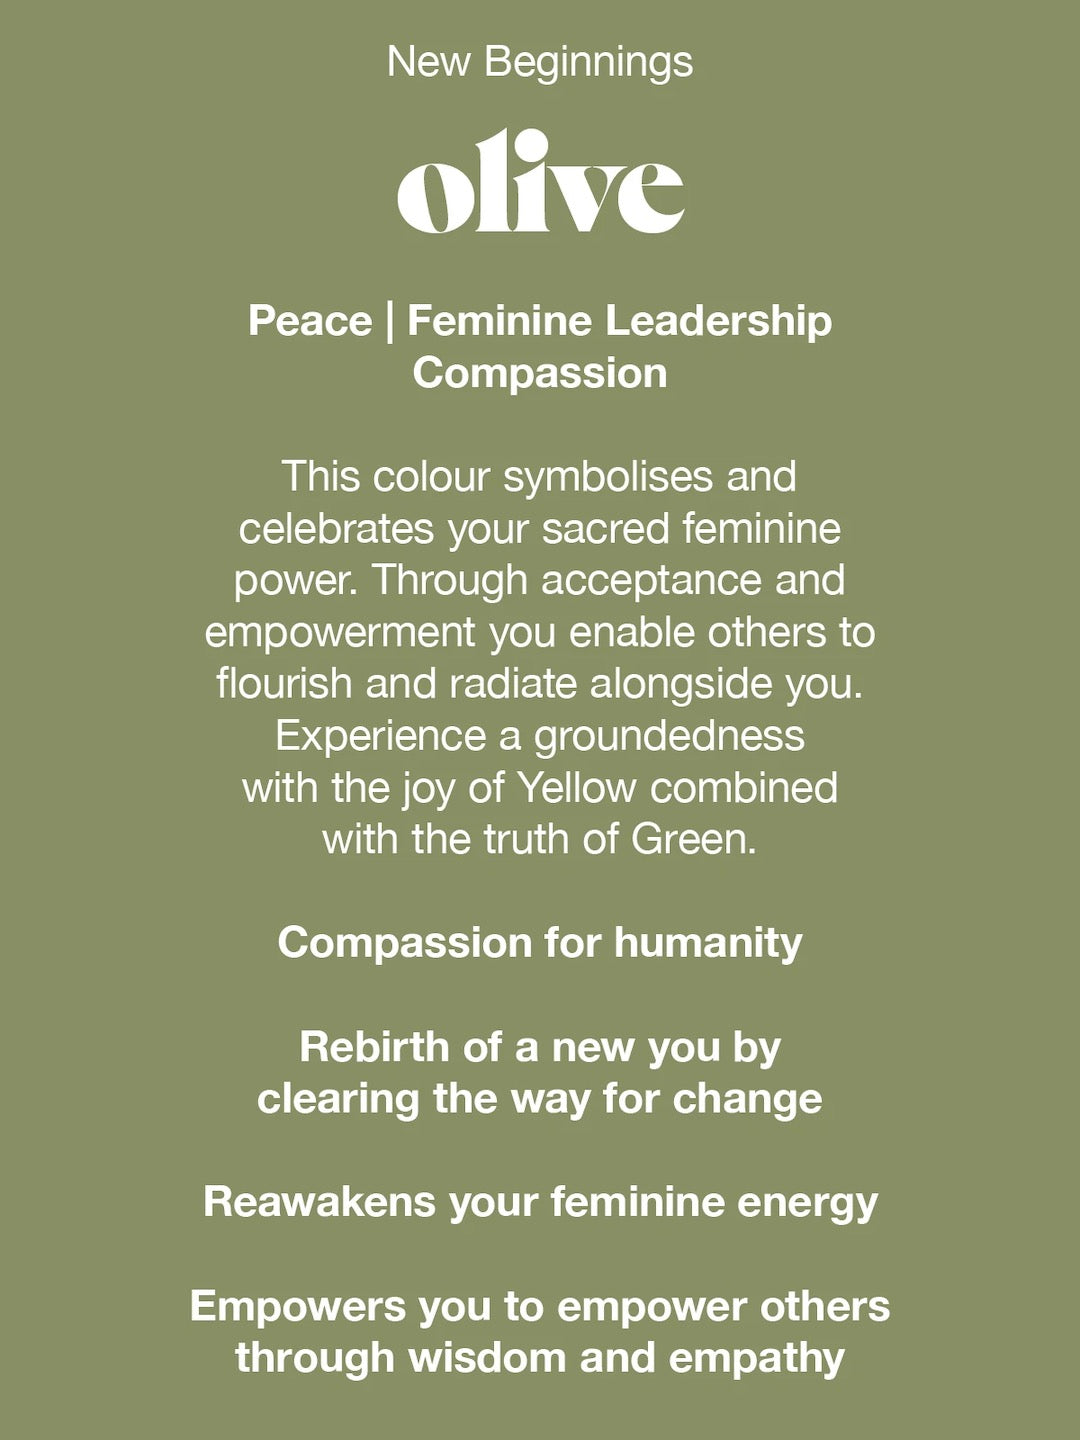 New beginnings Videris olive peace feminine leadership compassion.